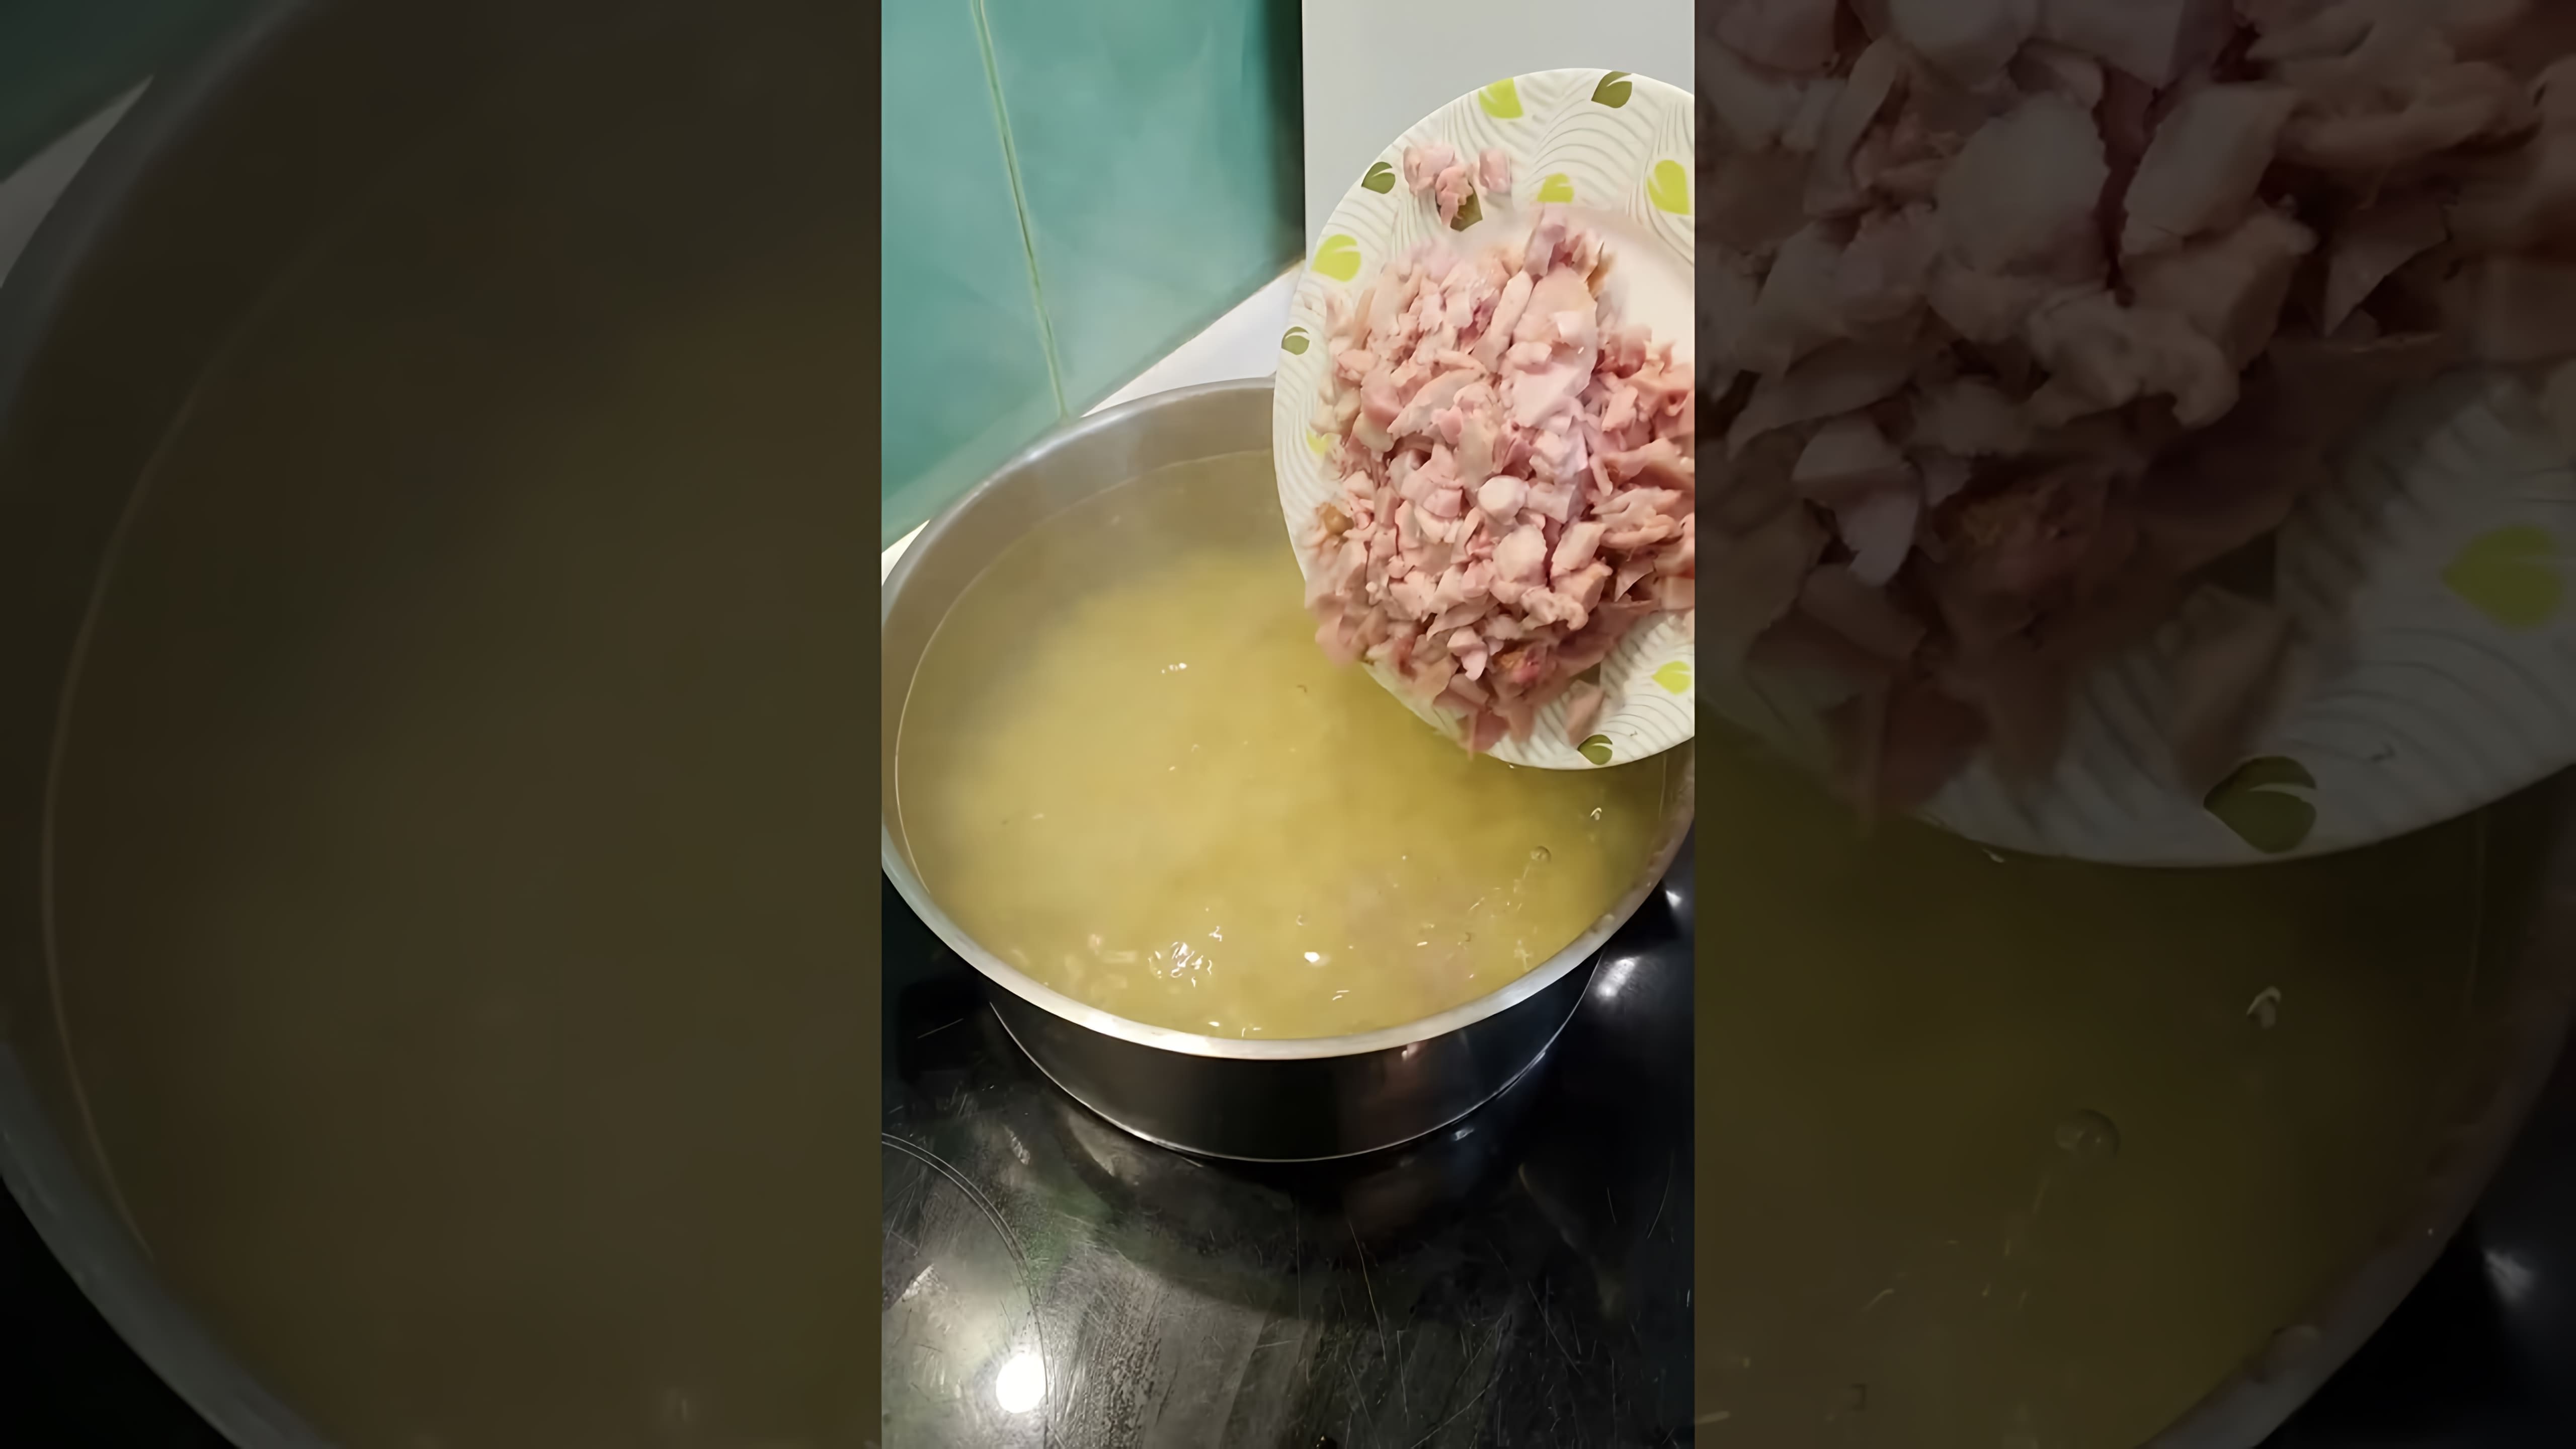 В этом видео демонстрируется рецепт приготовления сырного супа с копченой курицей